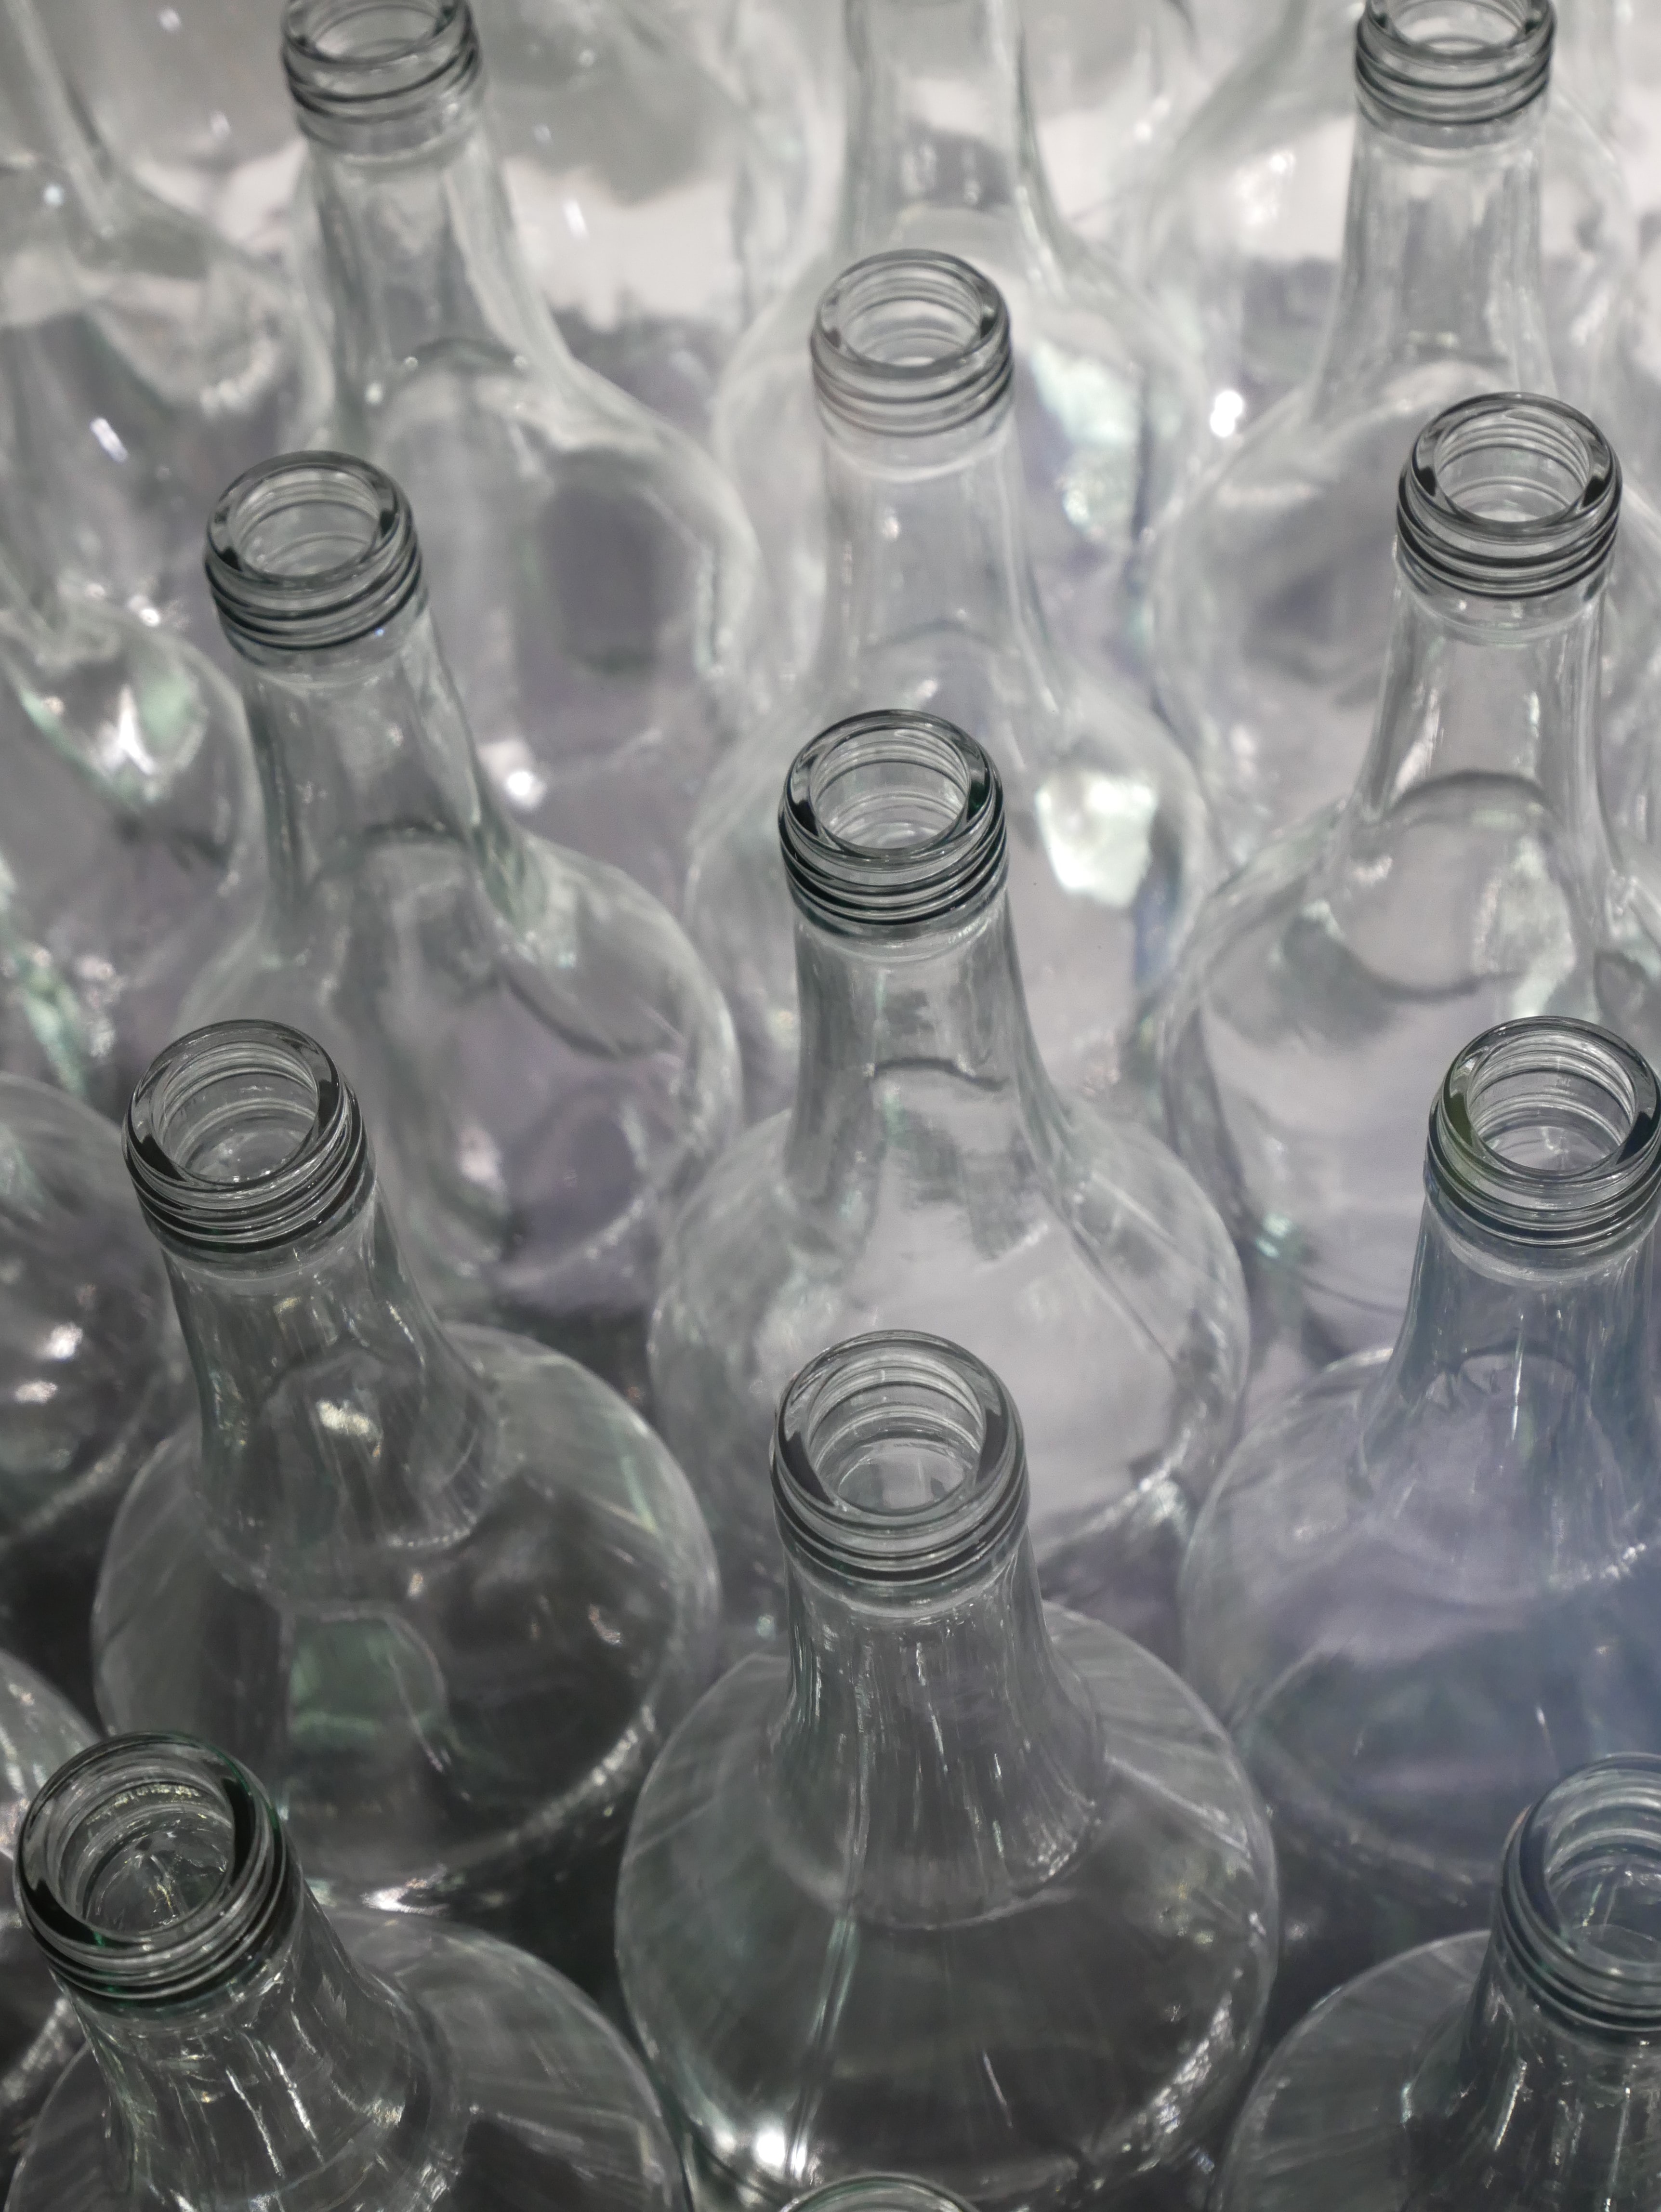 bottiglie di vetro stappate e vuote viste dall’alto